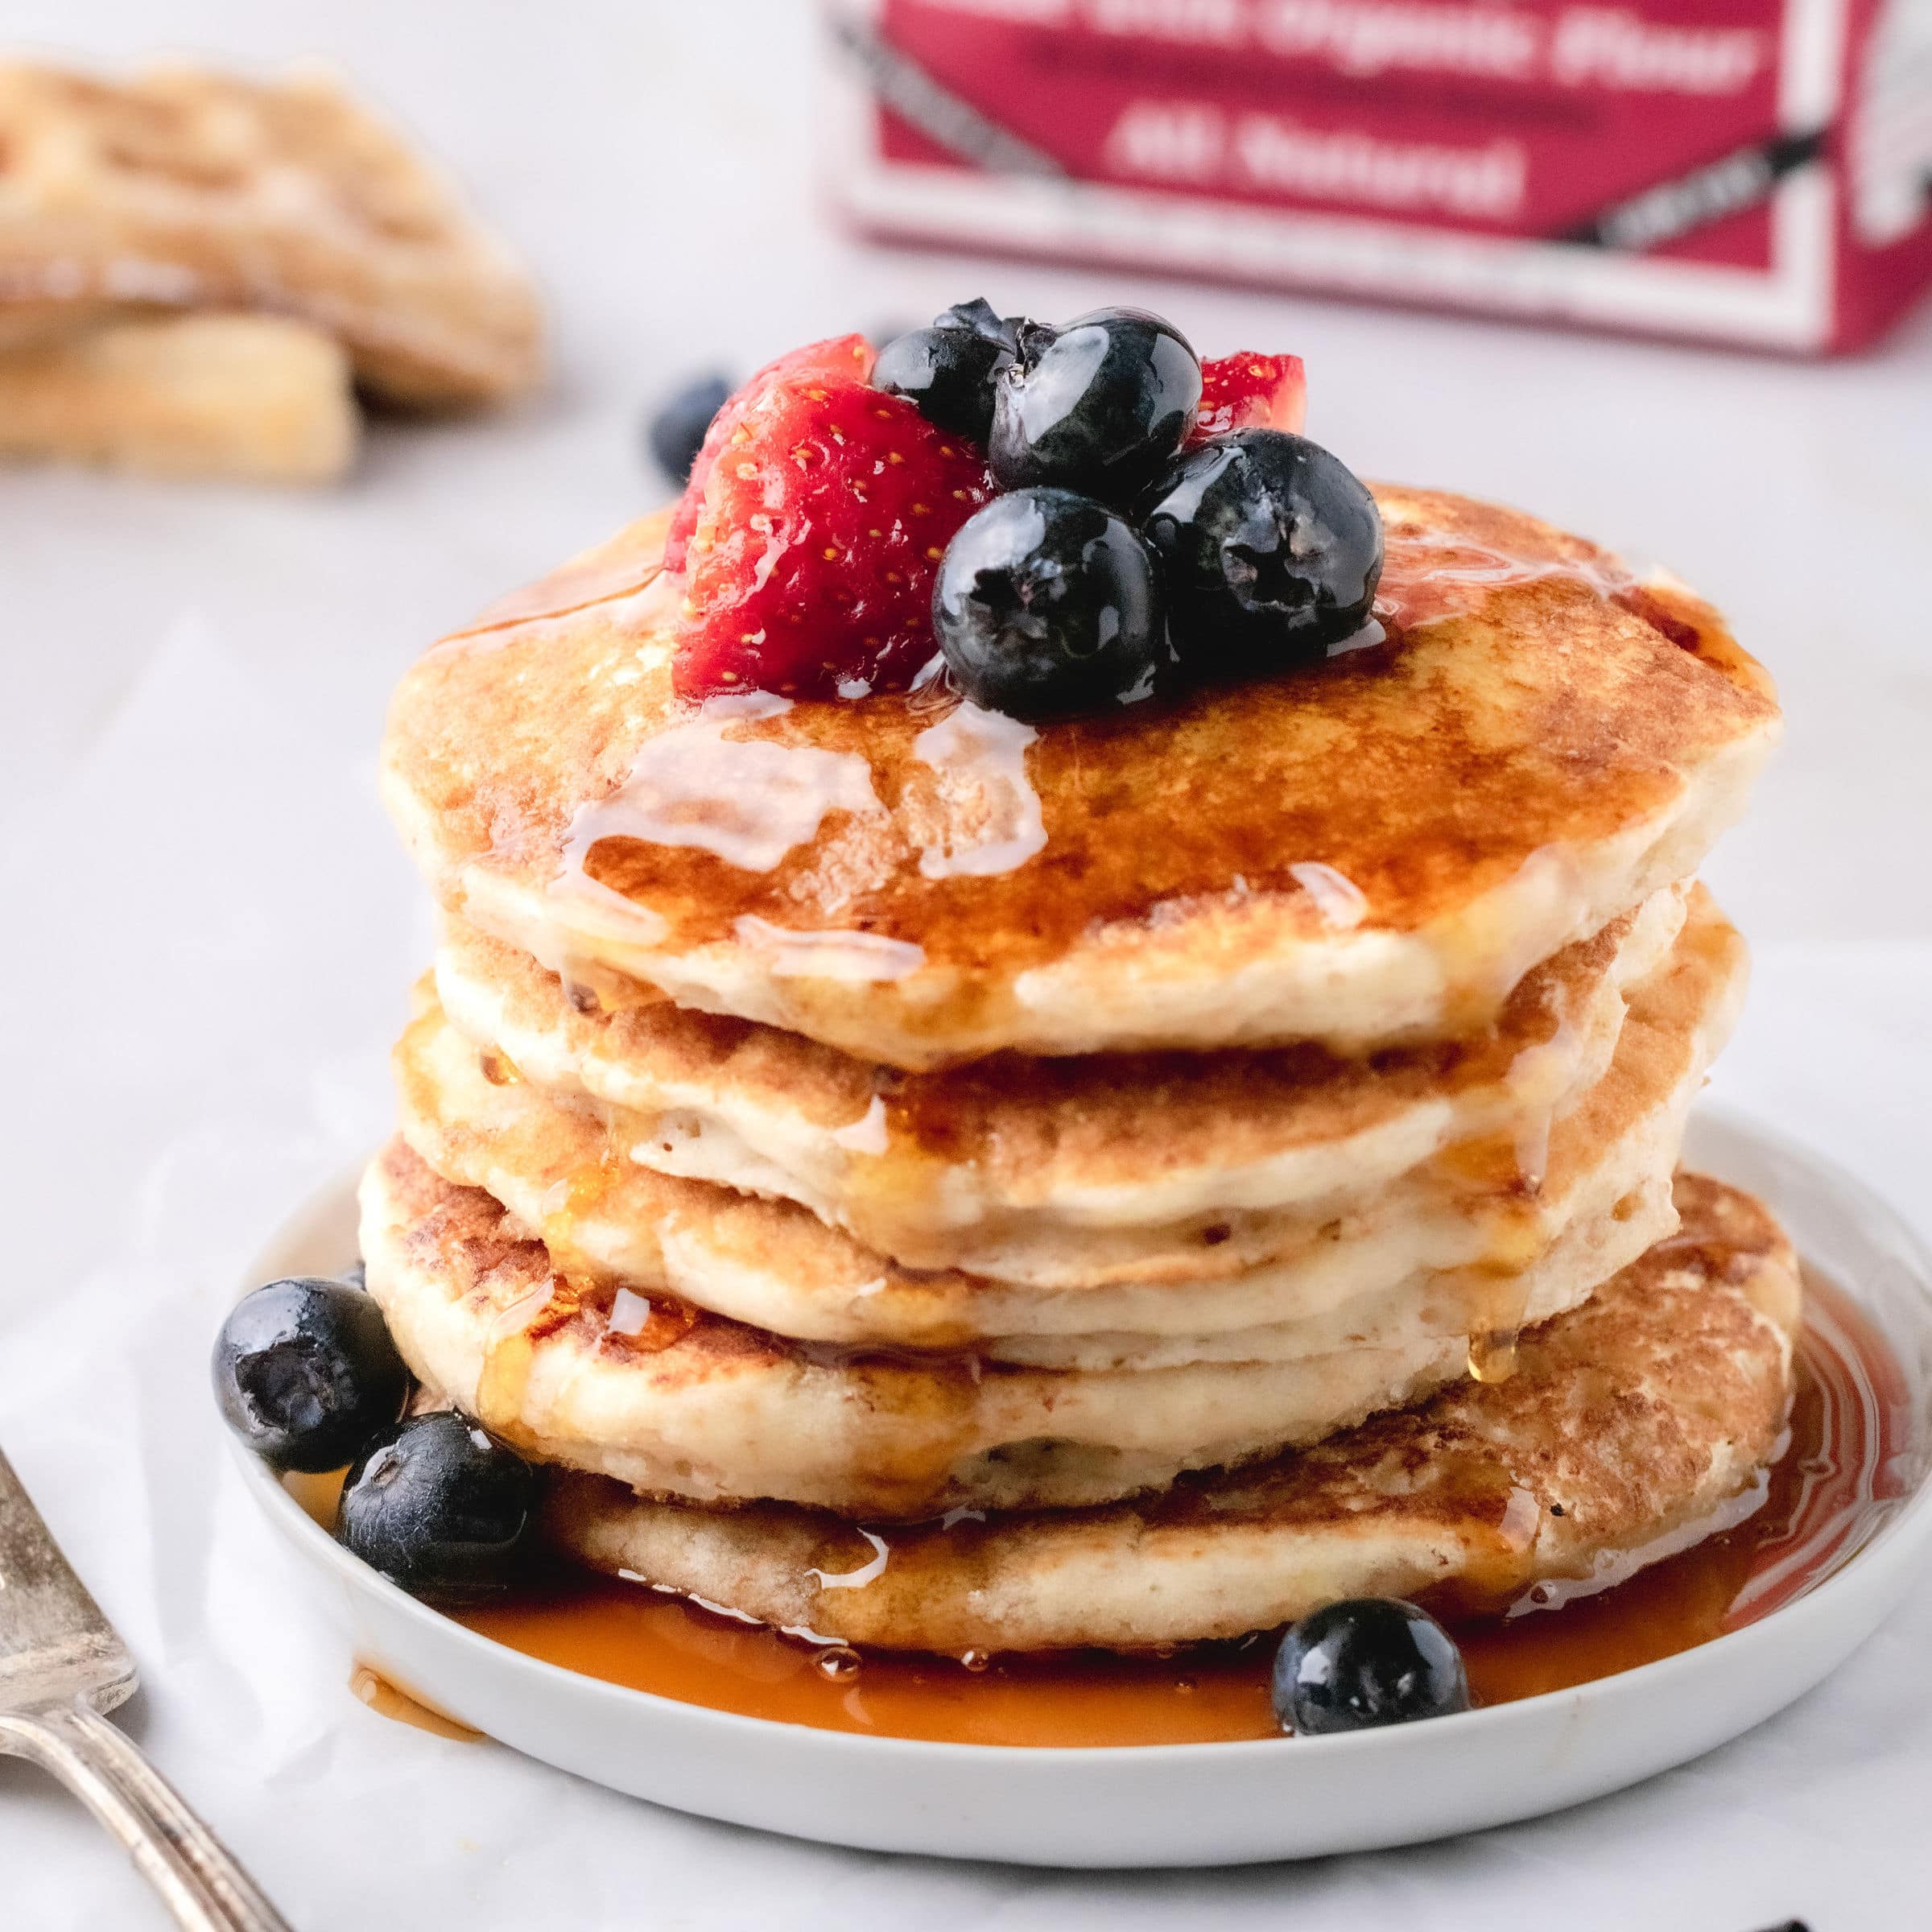 Share 60 kuva original pancake recipe - abzlocal fi